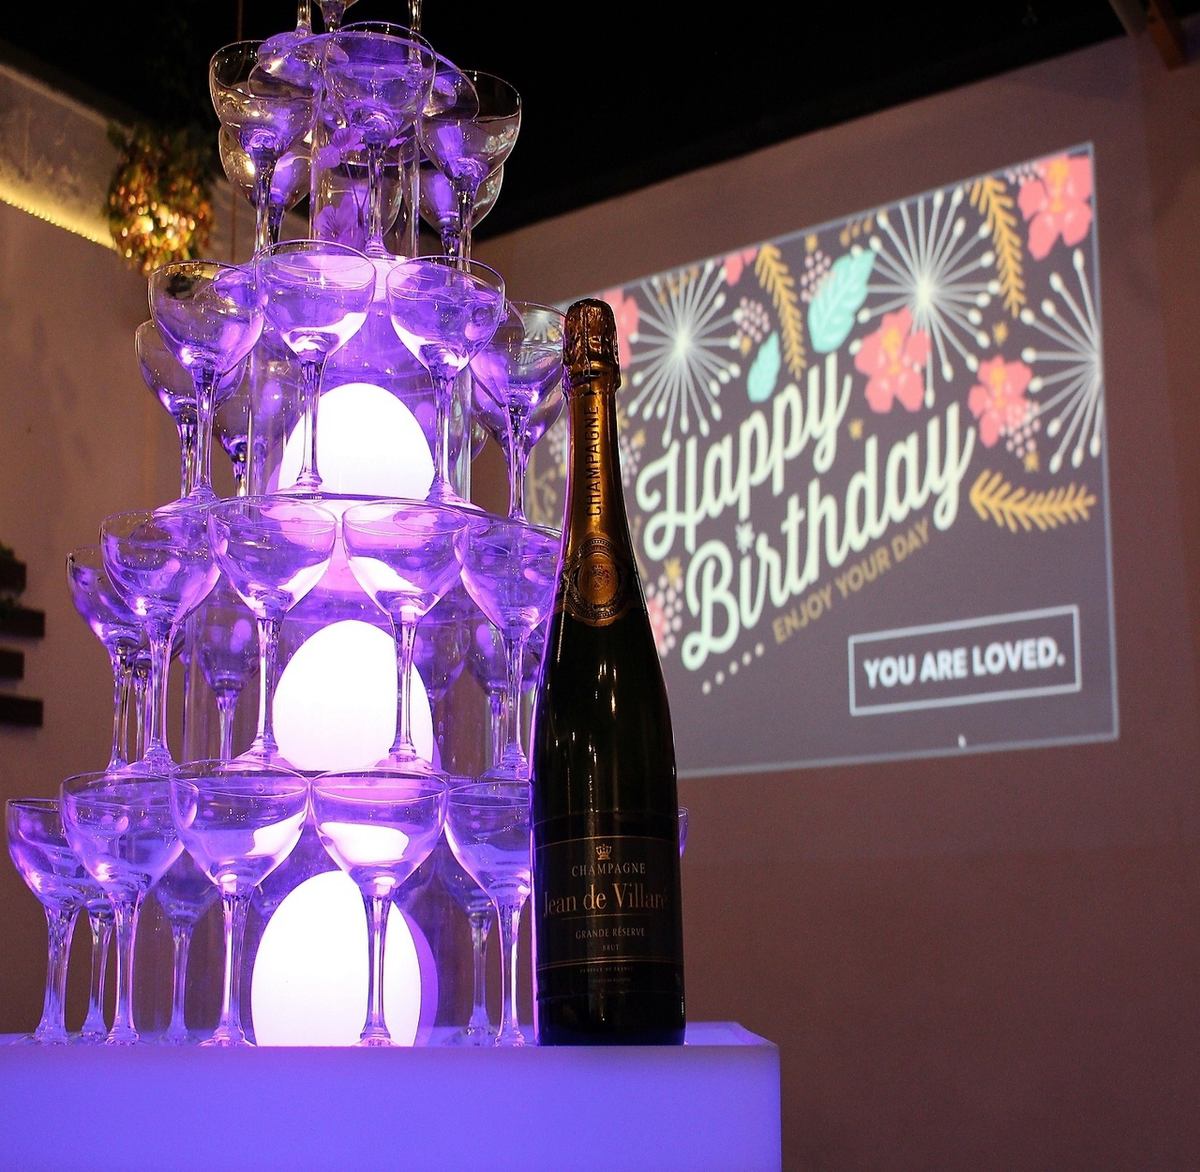 您也可以製作香檳塔！我們還有很多選項可以讓您的澀谷派對活躍起來，例如帶有照片的蛋糕和原創香檳標籤！